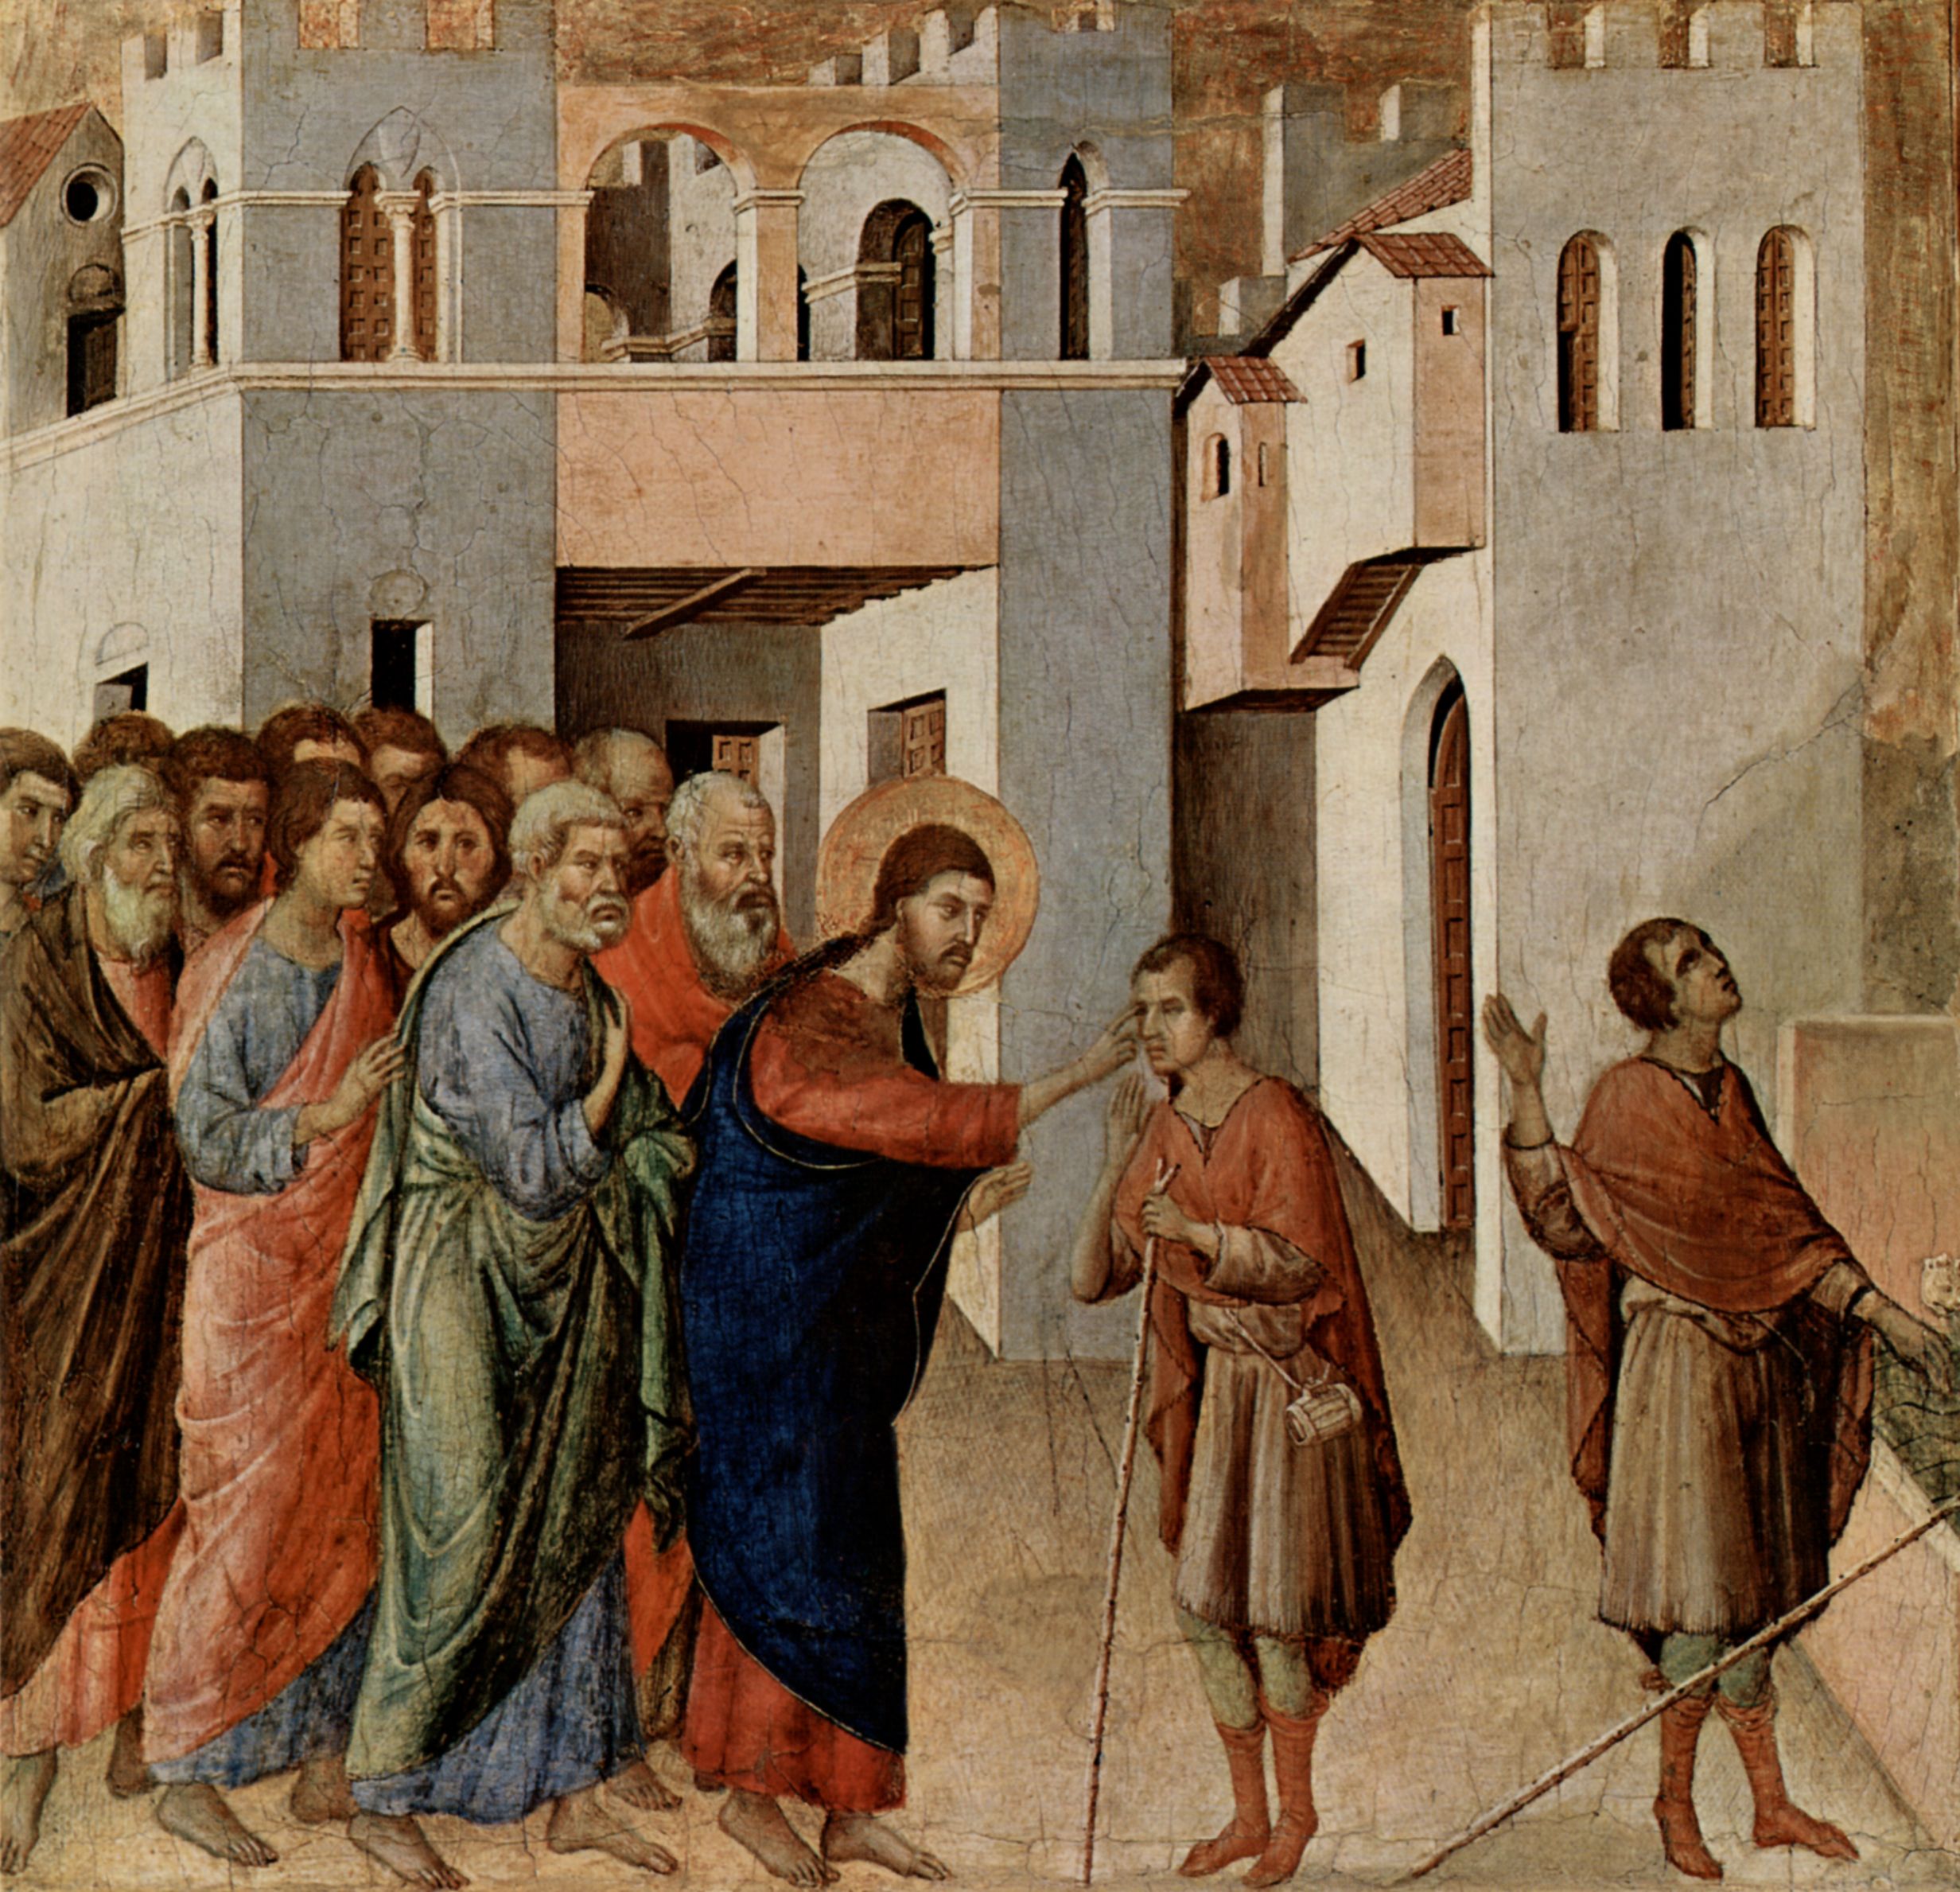 Duccio di Buoninsegna - Healing of the Blind Man